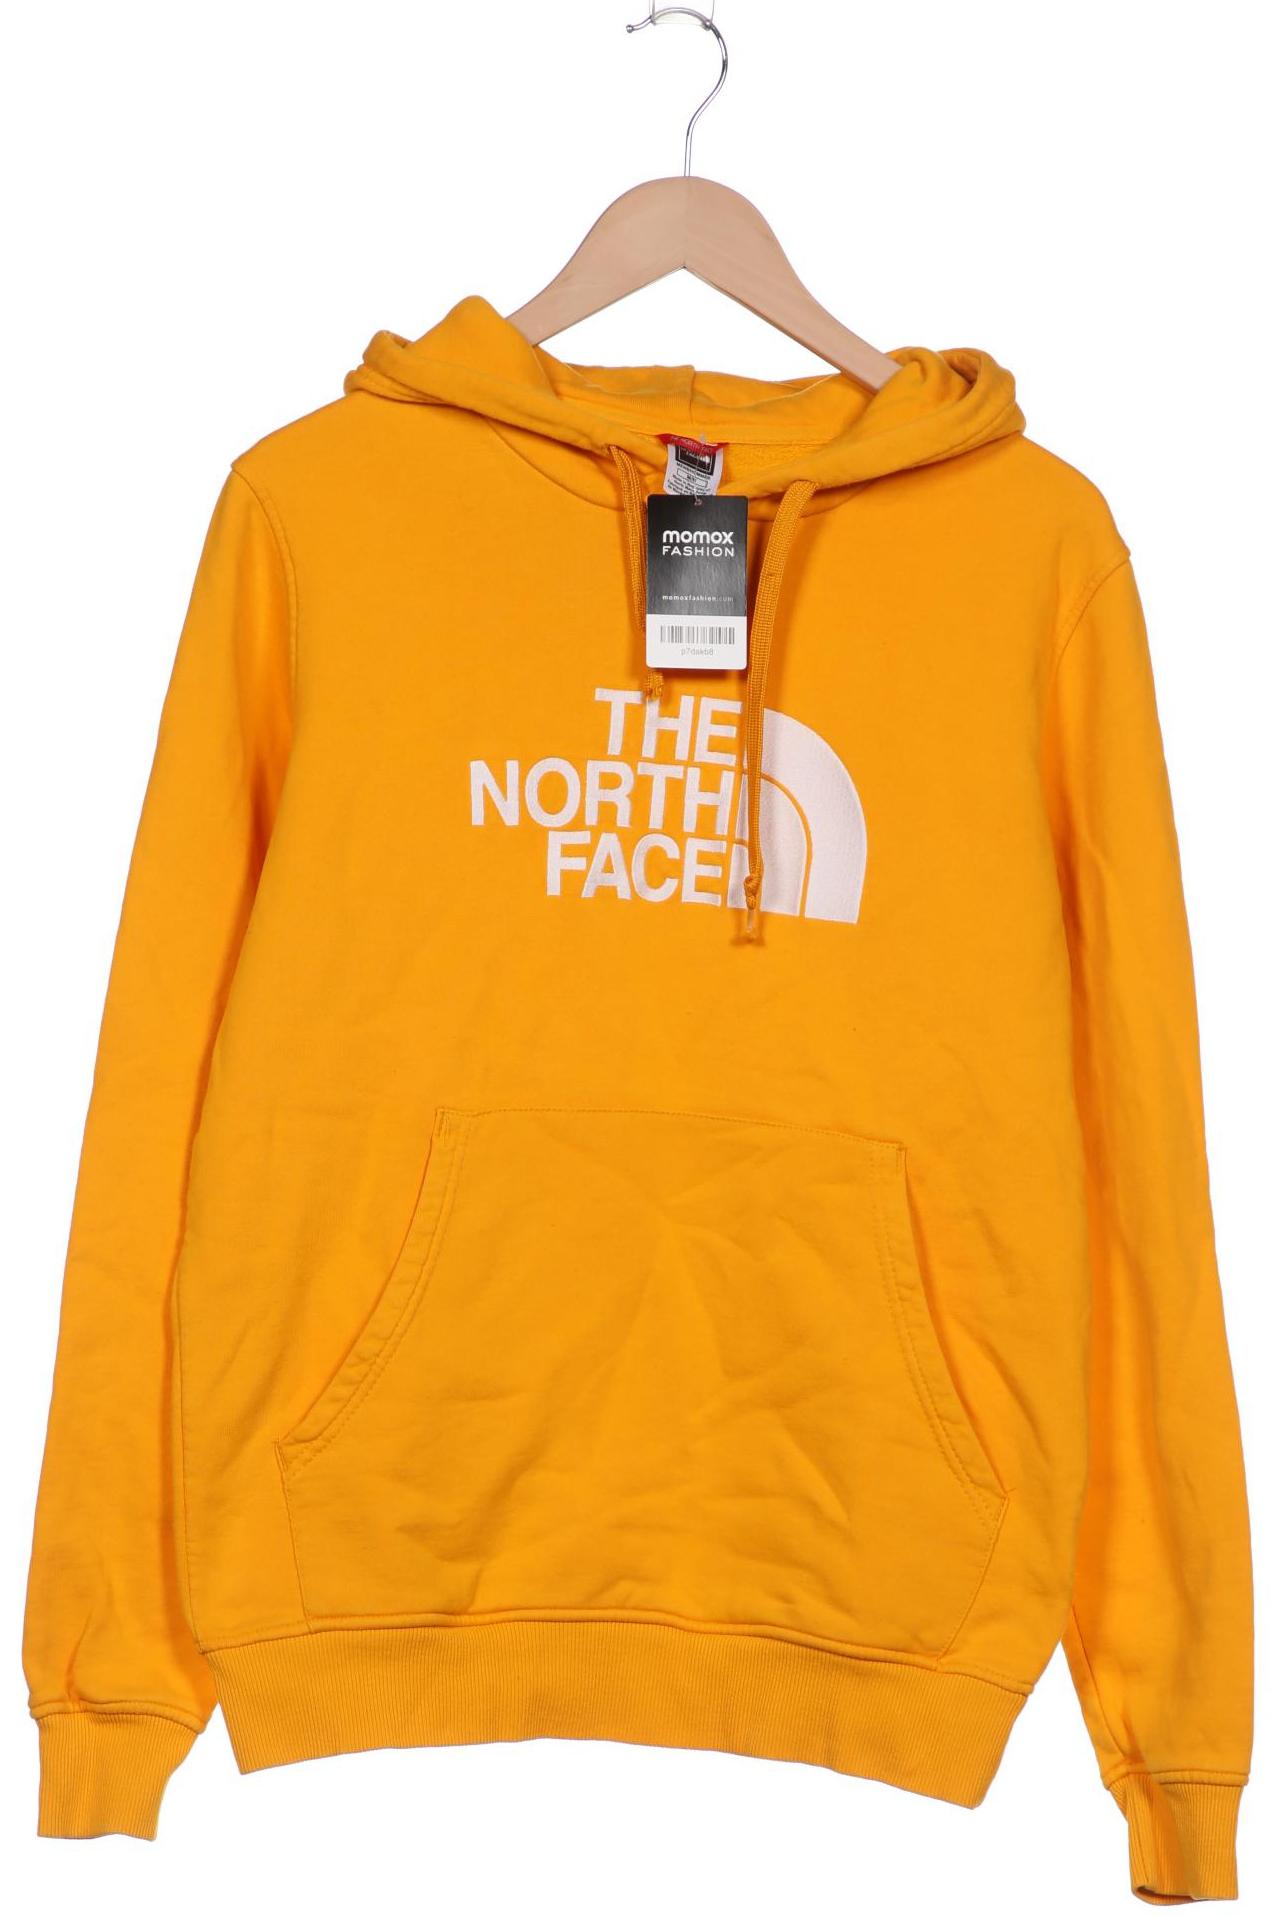 The North Face Herren Kapuzenpullover, orange von The North Face